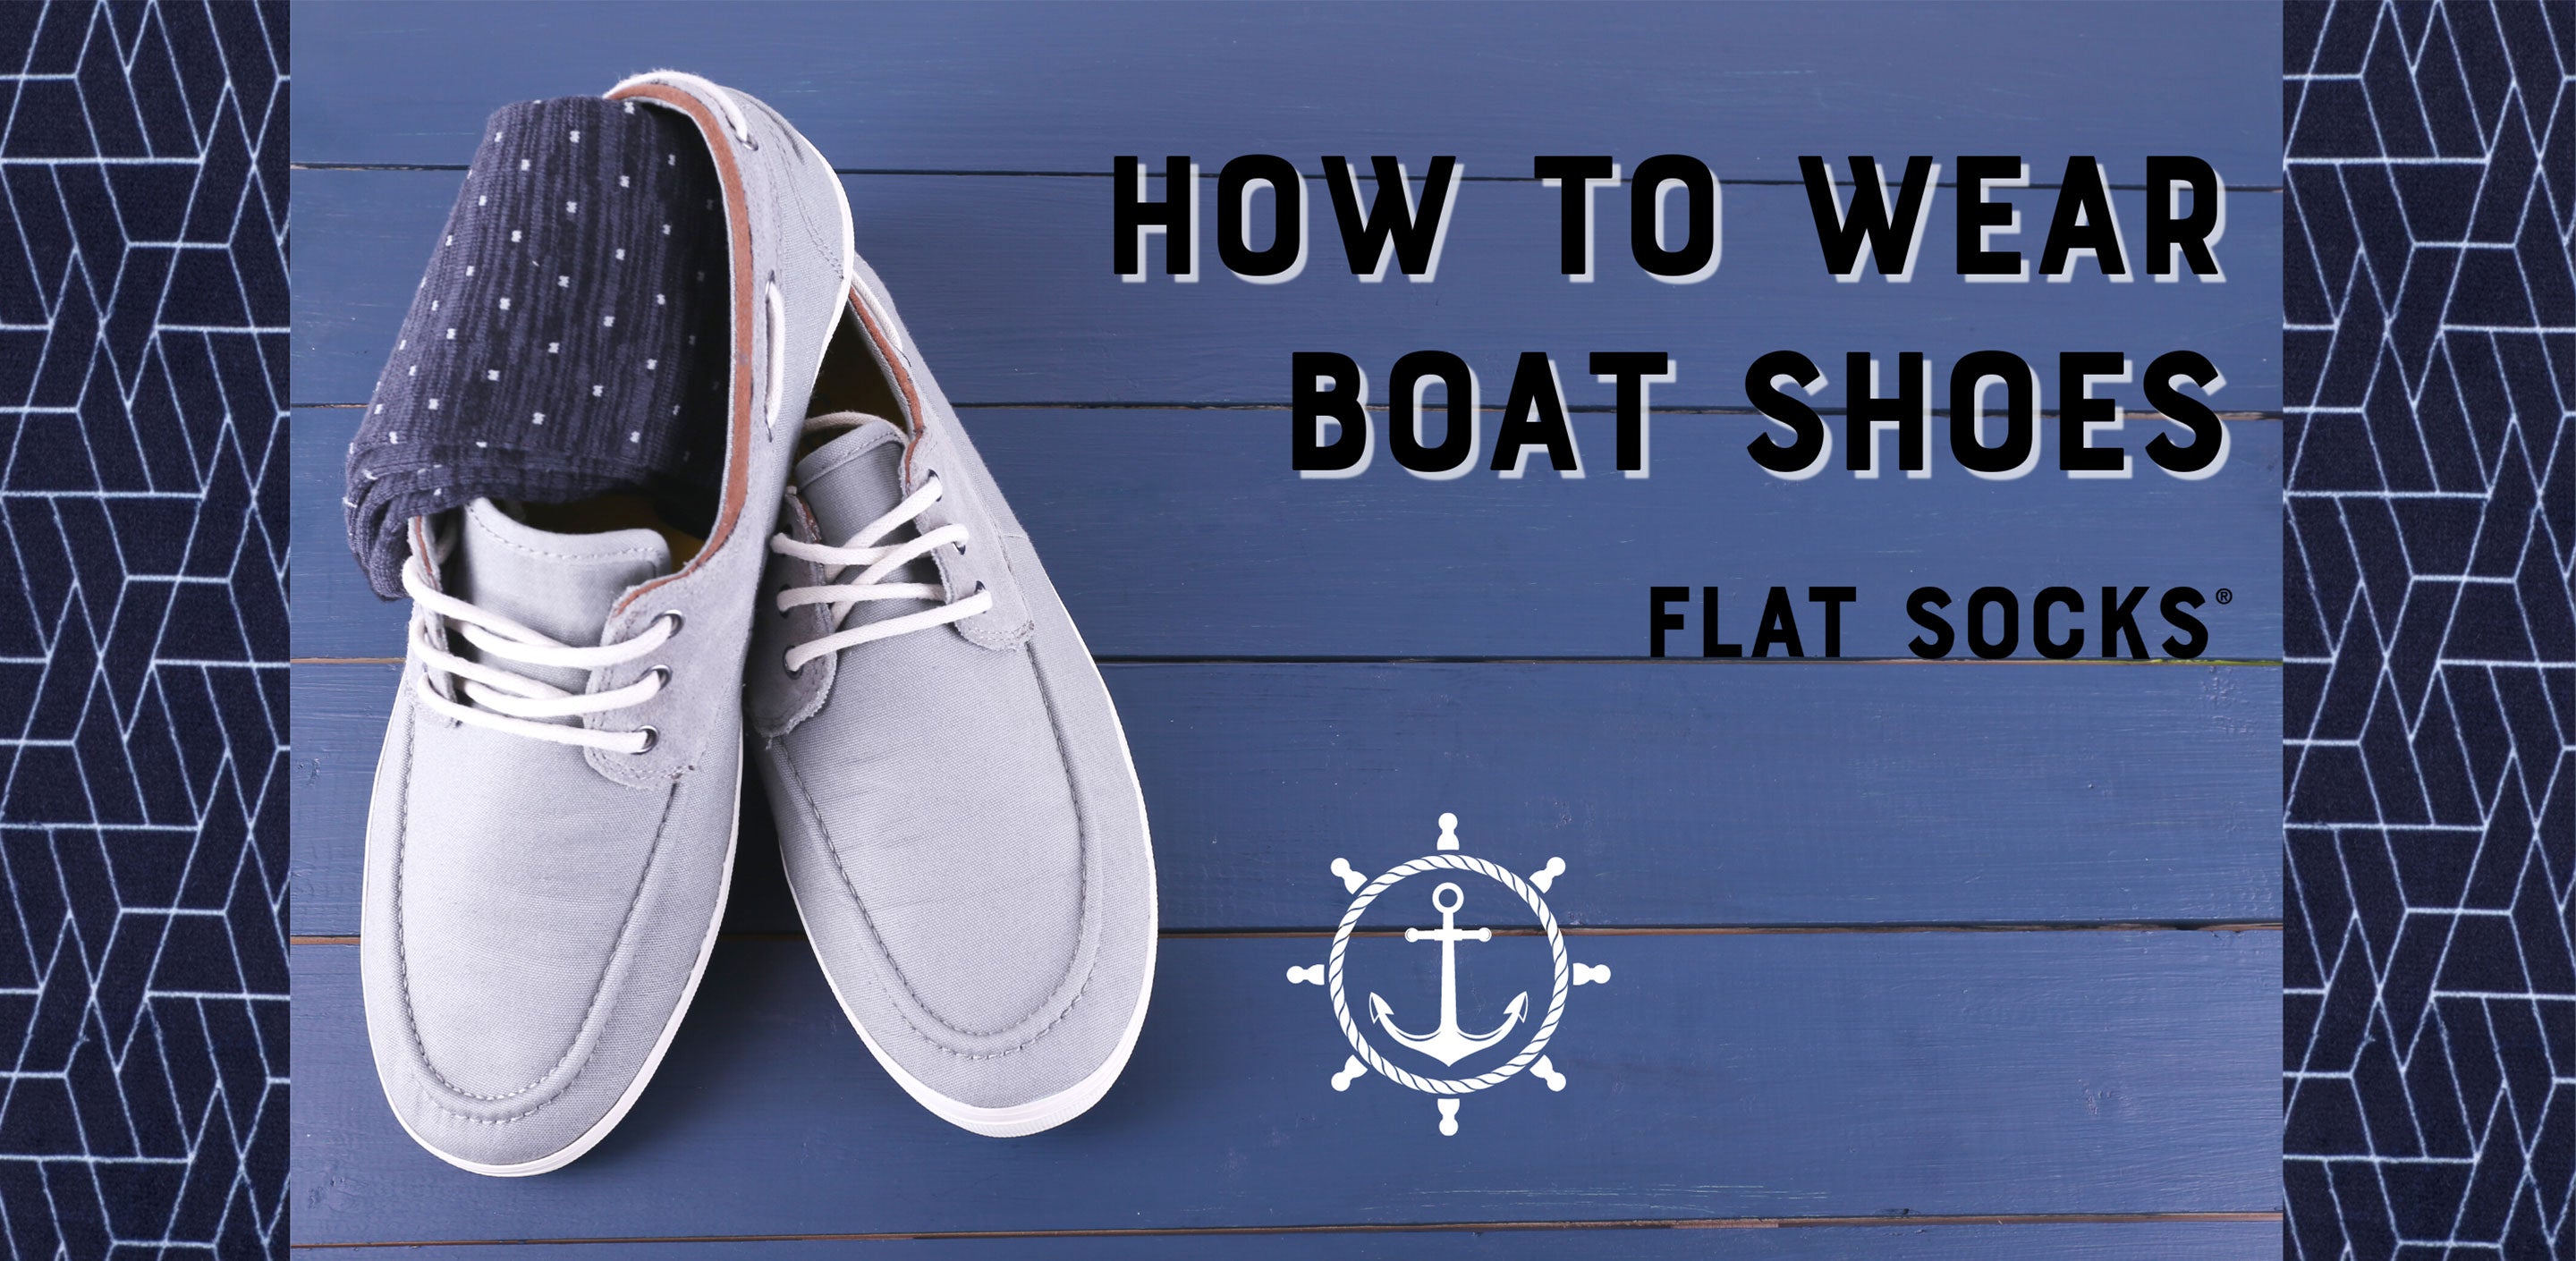 The Best Way to Wear Boat Shoes – FLAT SOCKS